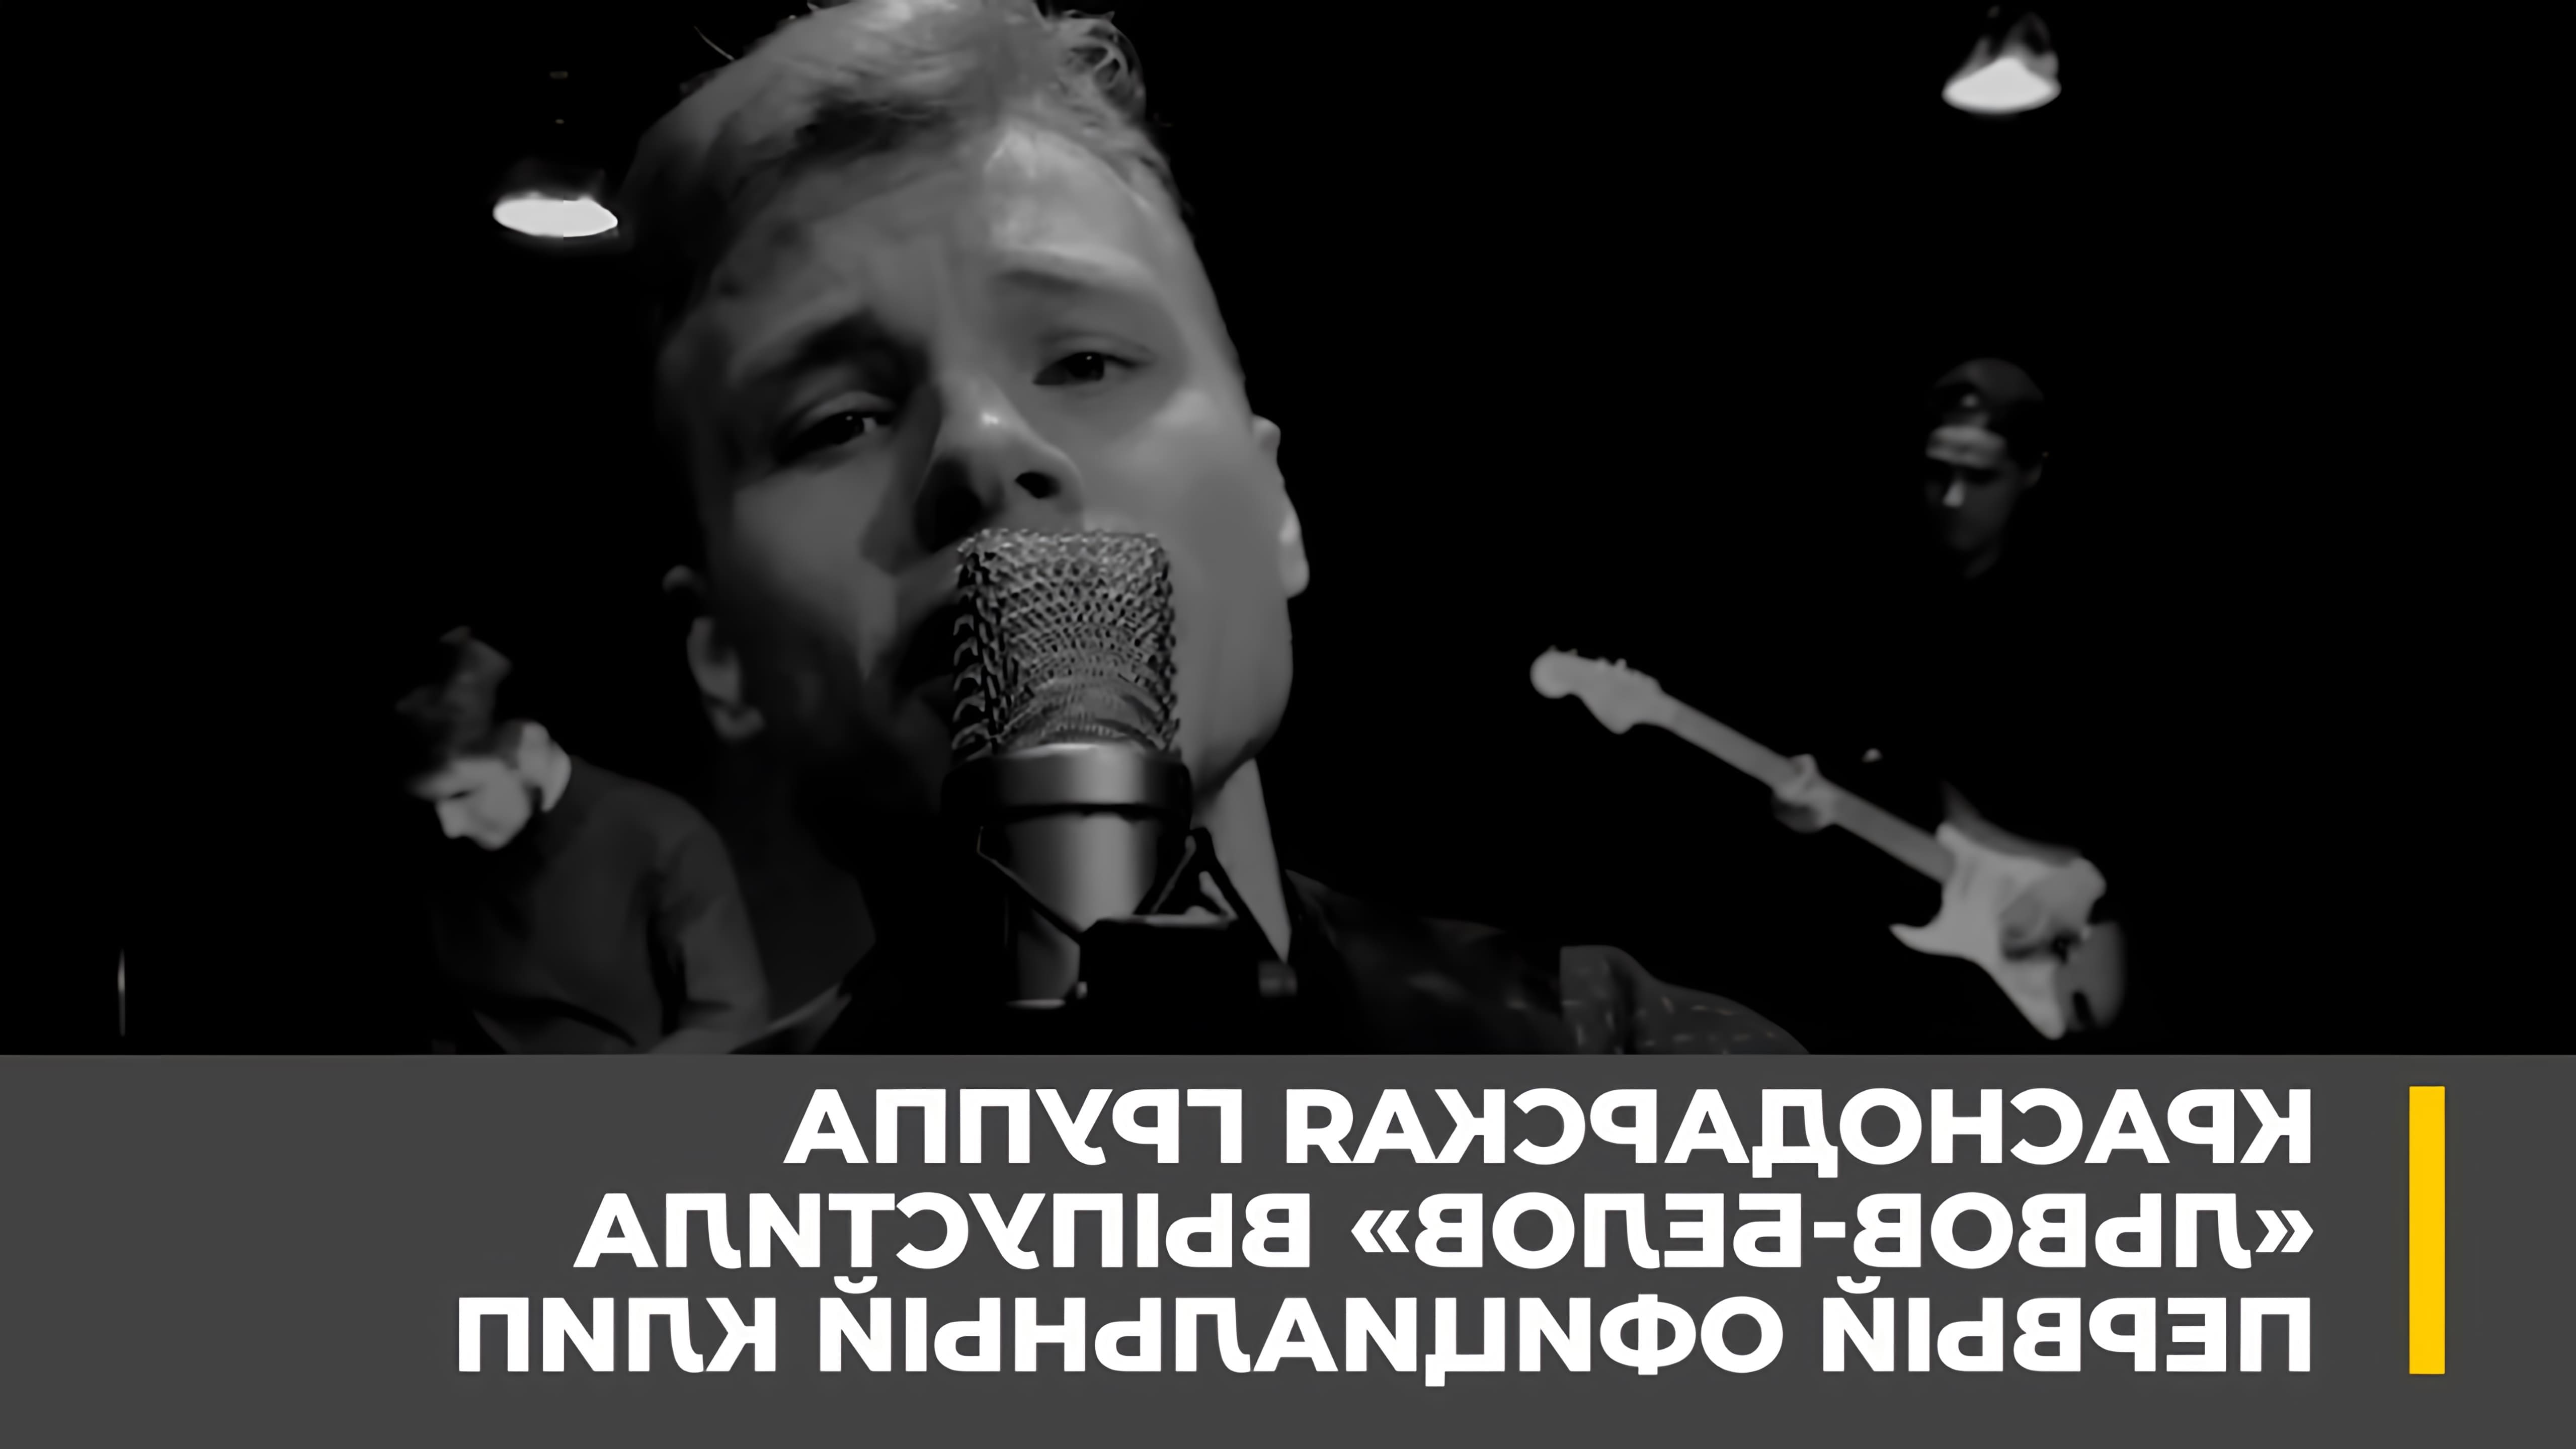 Краснодарская группа «Львов-Белов» выпустила свой первый официальный клип во время карантина